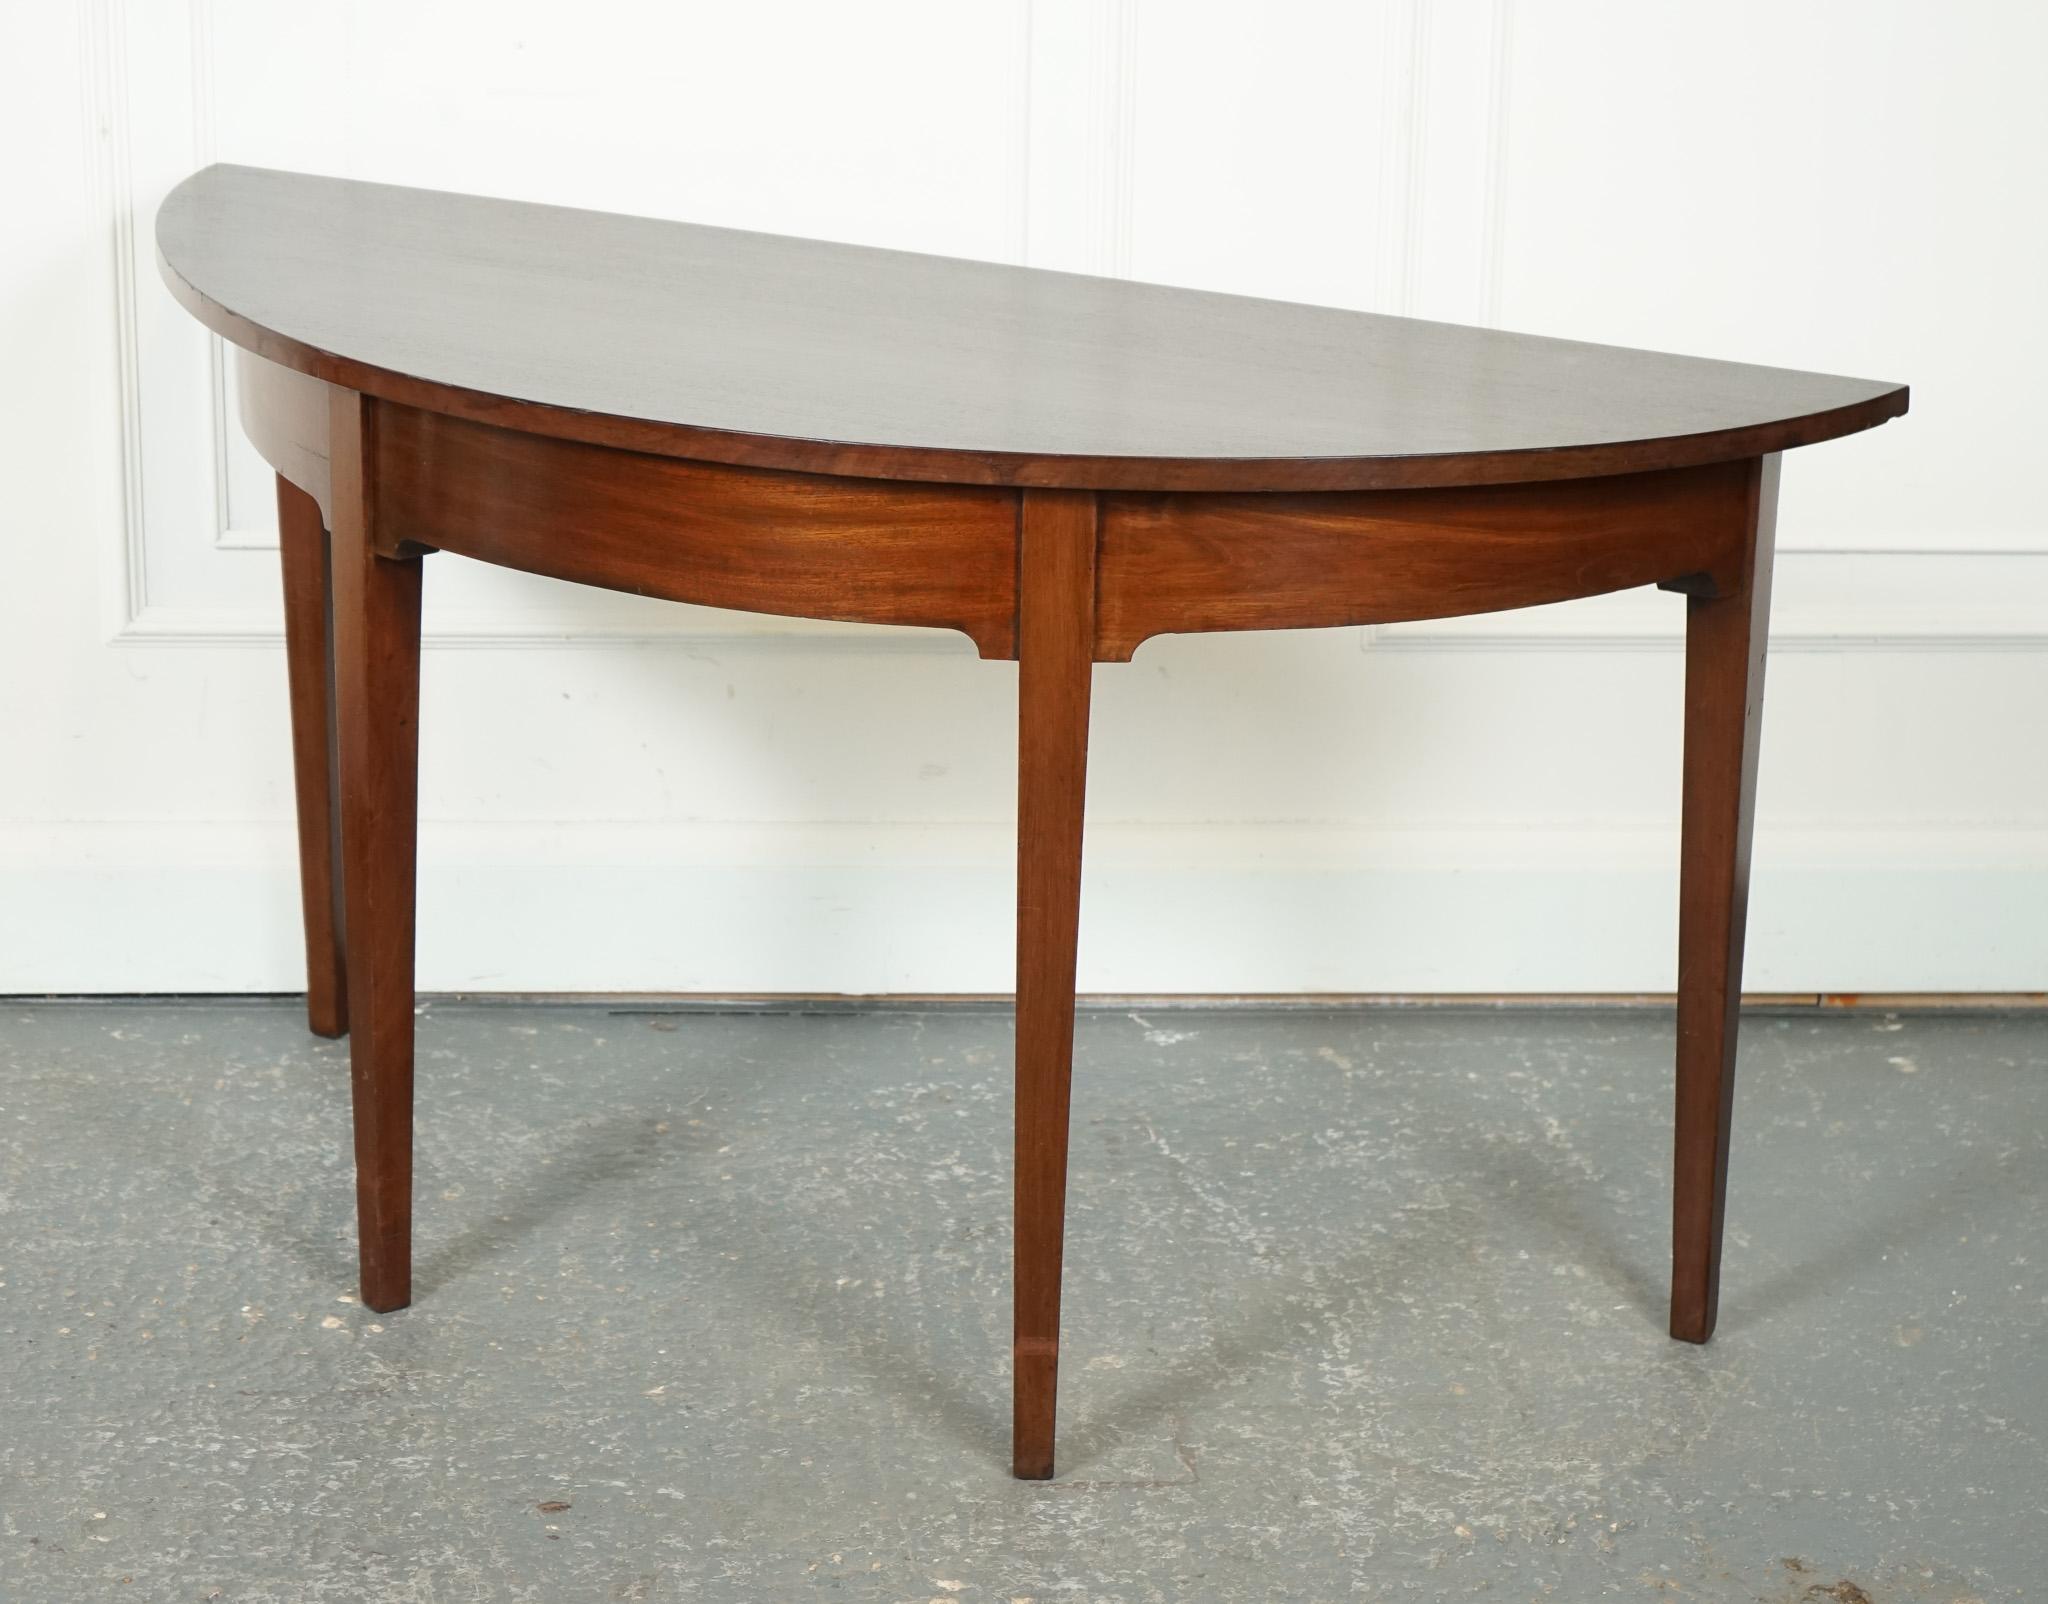 
Wir freuen uns, diesen schönen George III Demi Lune Tisch zum Verkauf anbieten zu können.

Dieser Demi-Lune-Seitentisch aus der Zeit um 1800 von George III. strahlt eine zeitlose Eleganz und Raffinesse aus. Dieses in der Blütezeit des